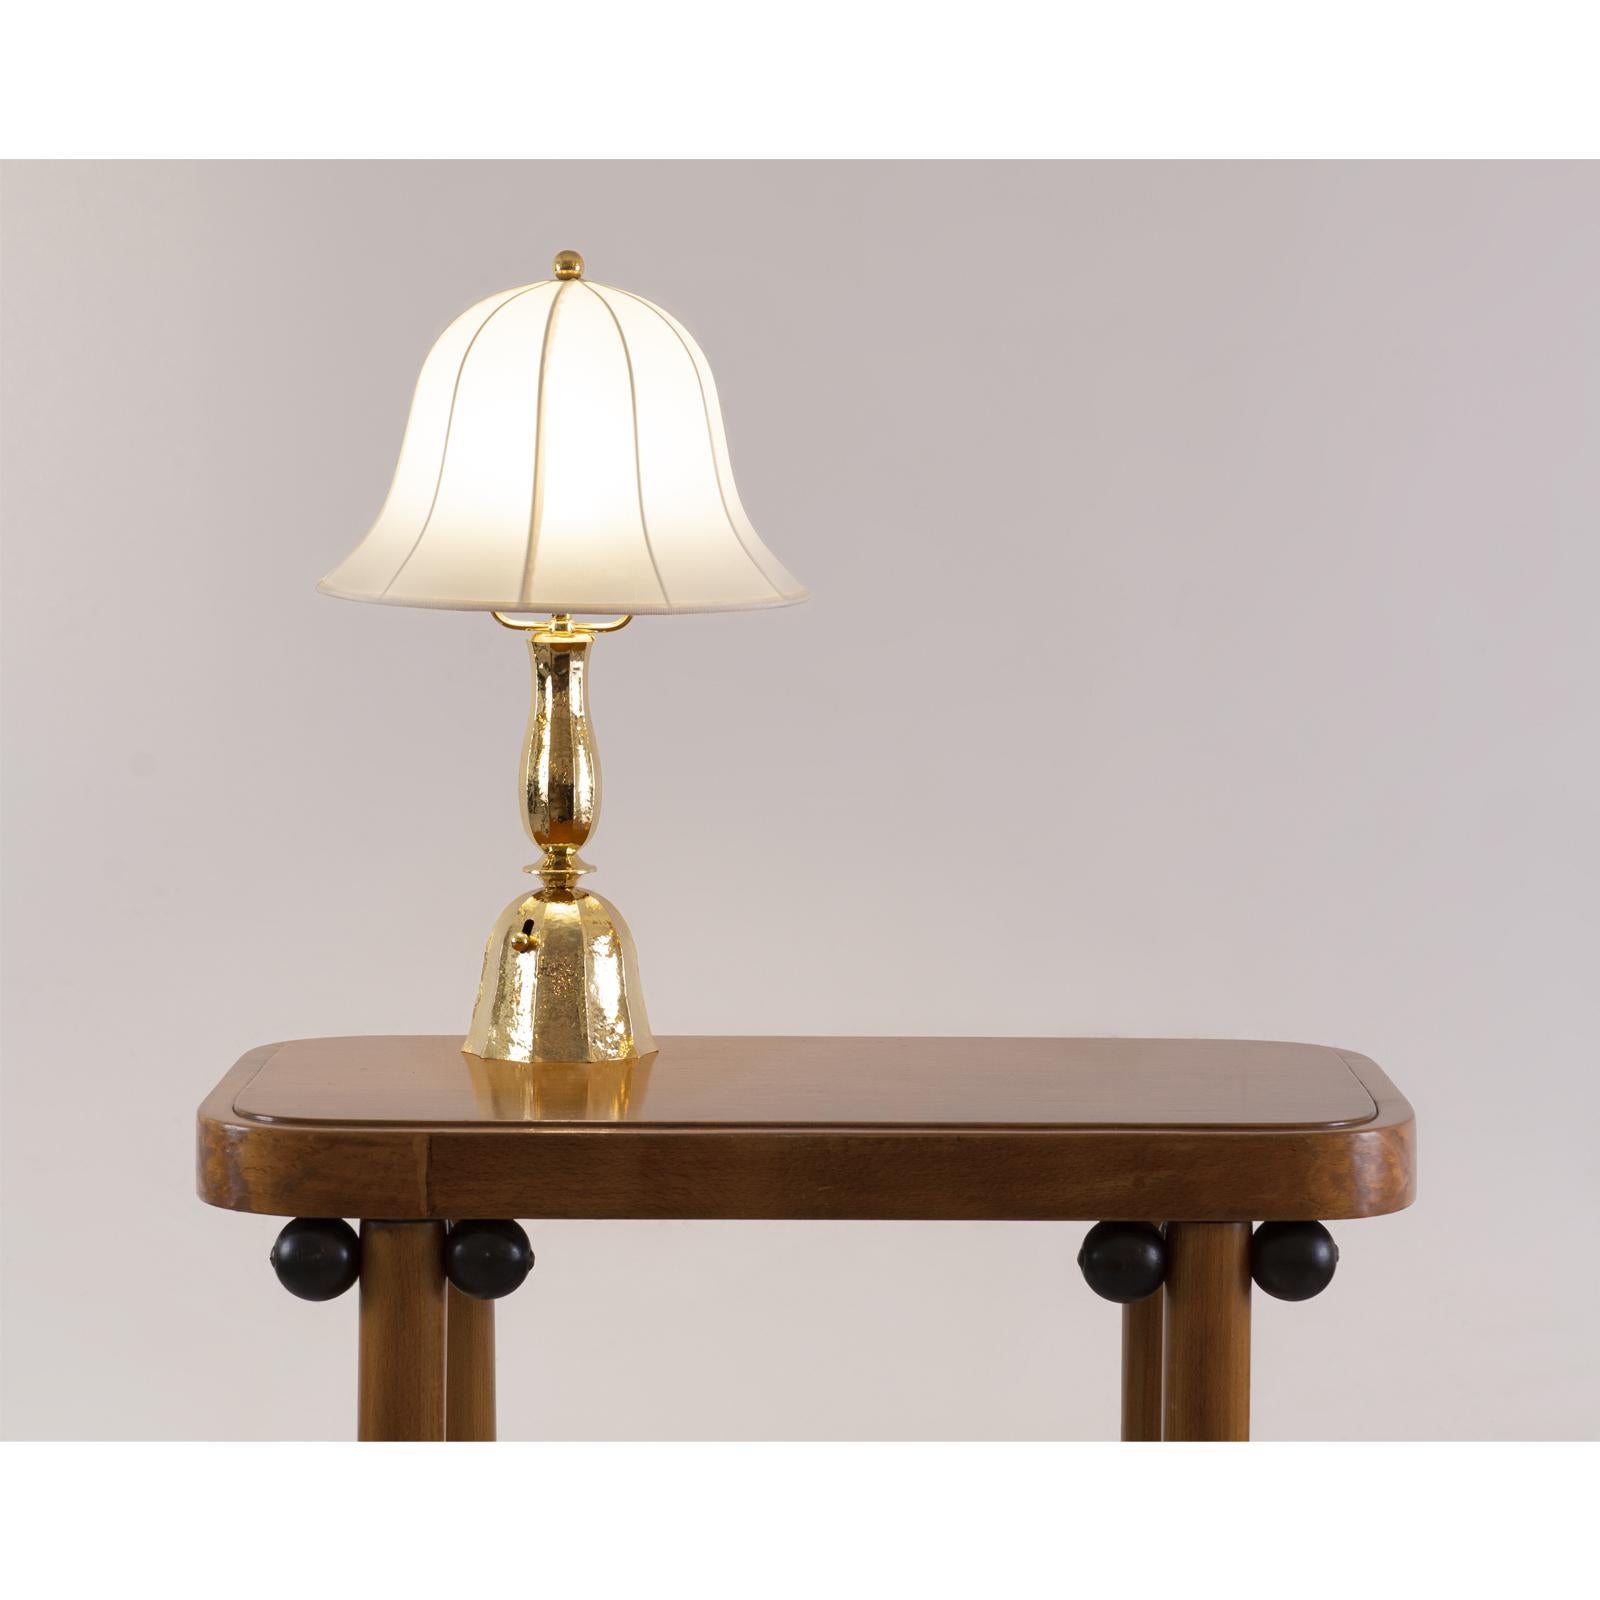 Austrian Josef Frank Fabric /Josef Hoffmann Wiener Werkstaette Table Lamp, Re-Edition For Sale